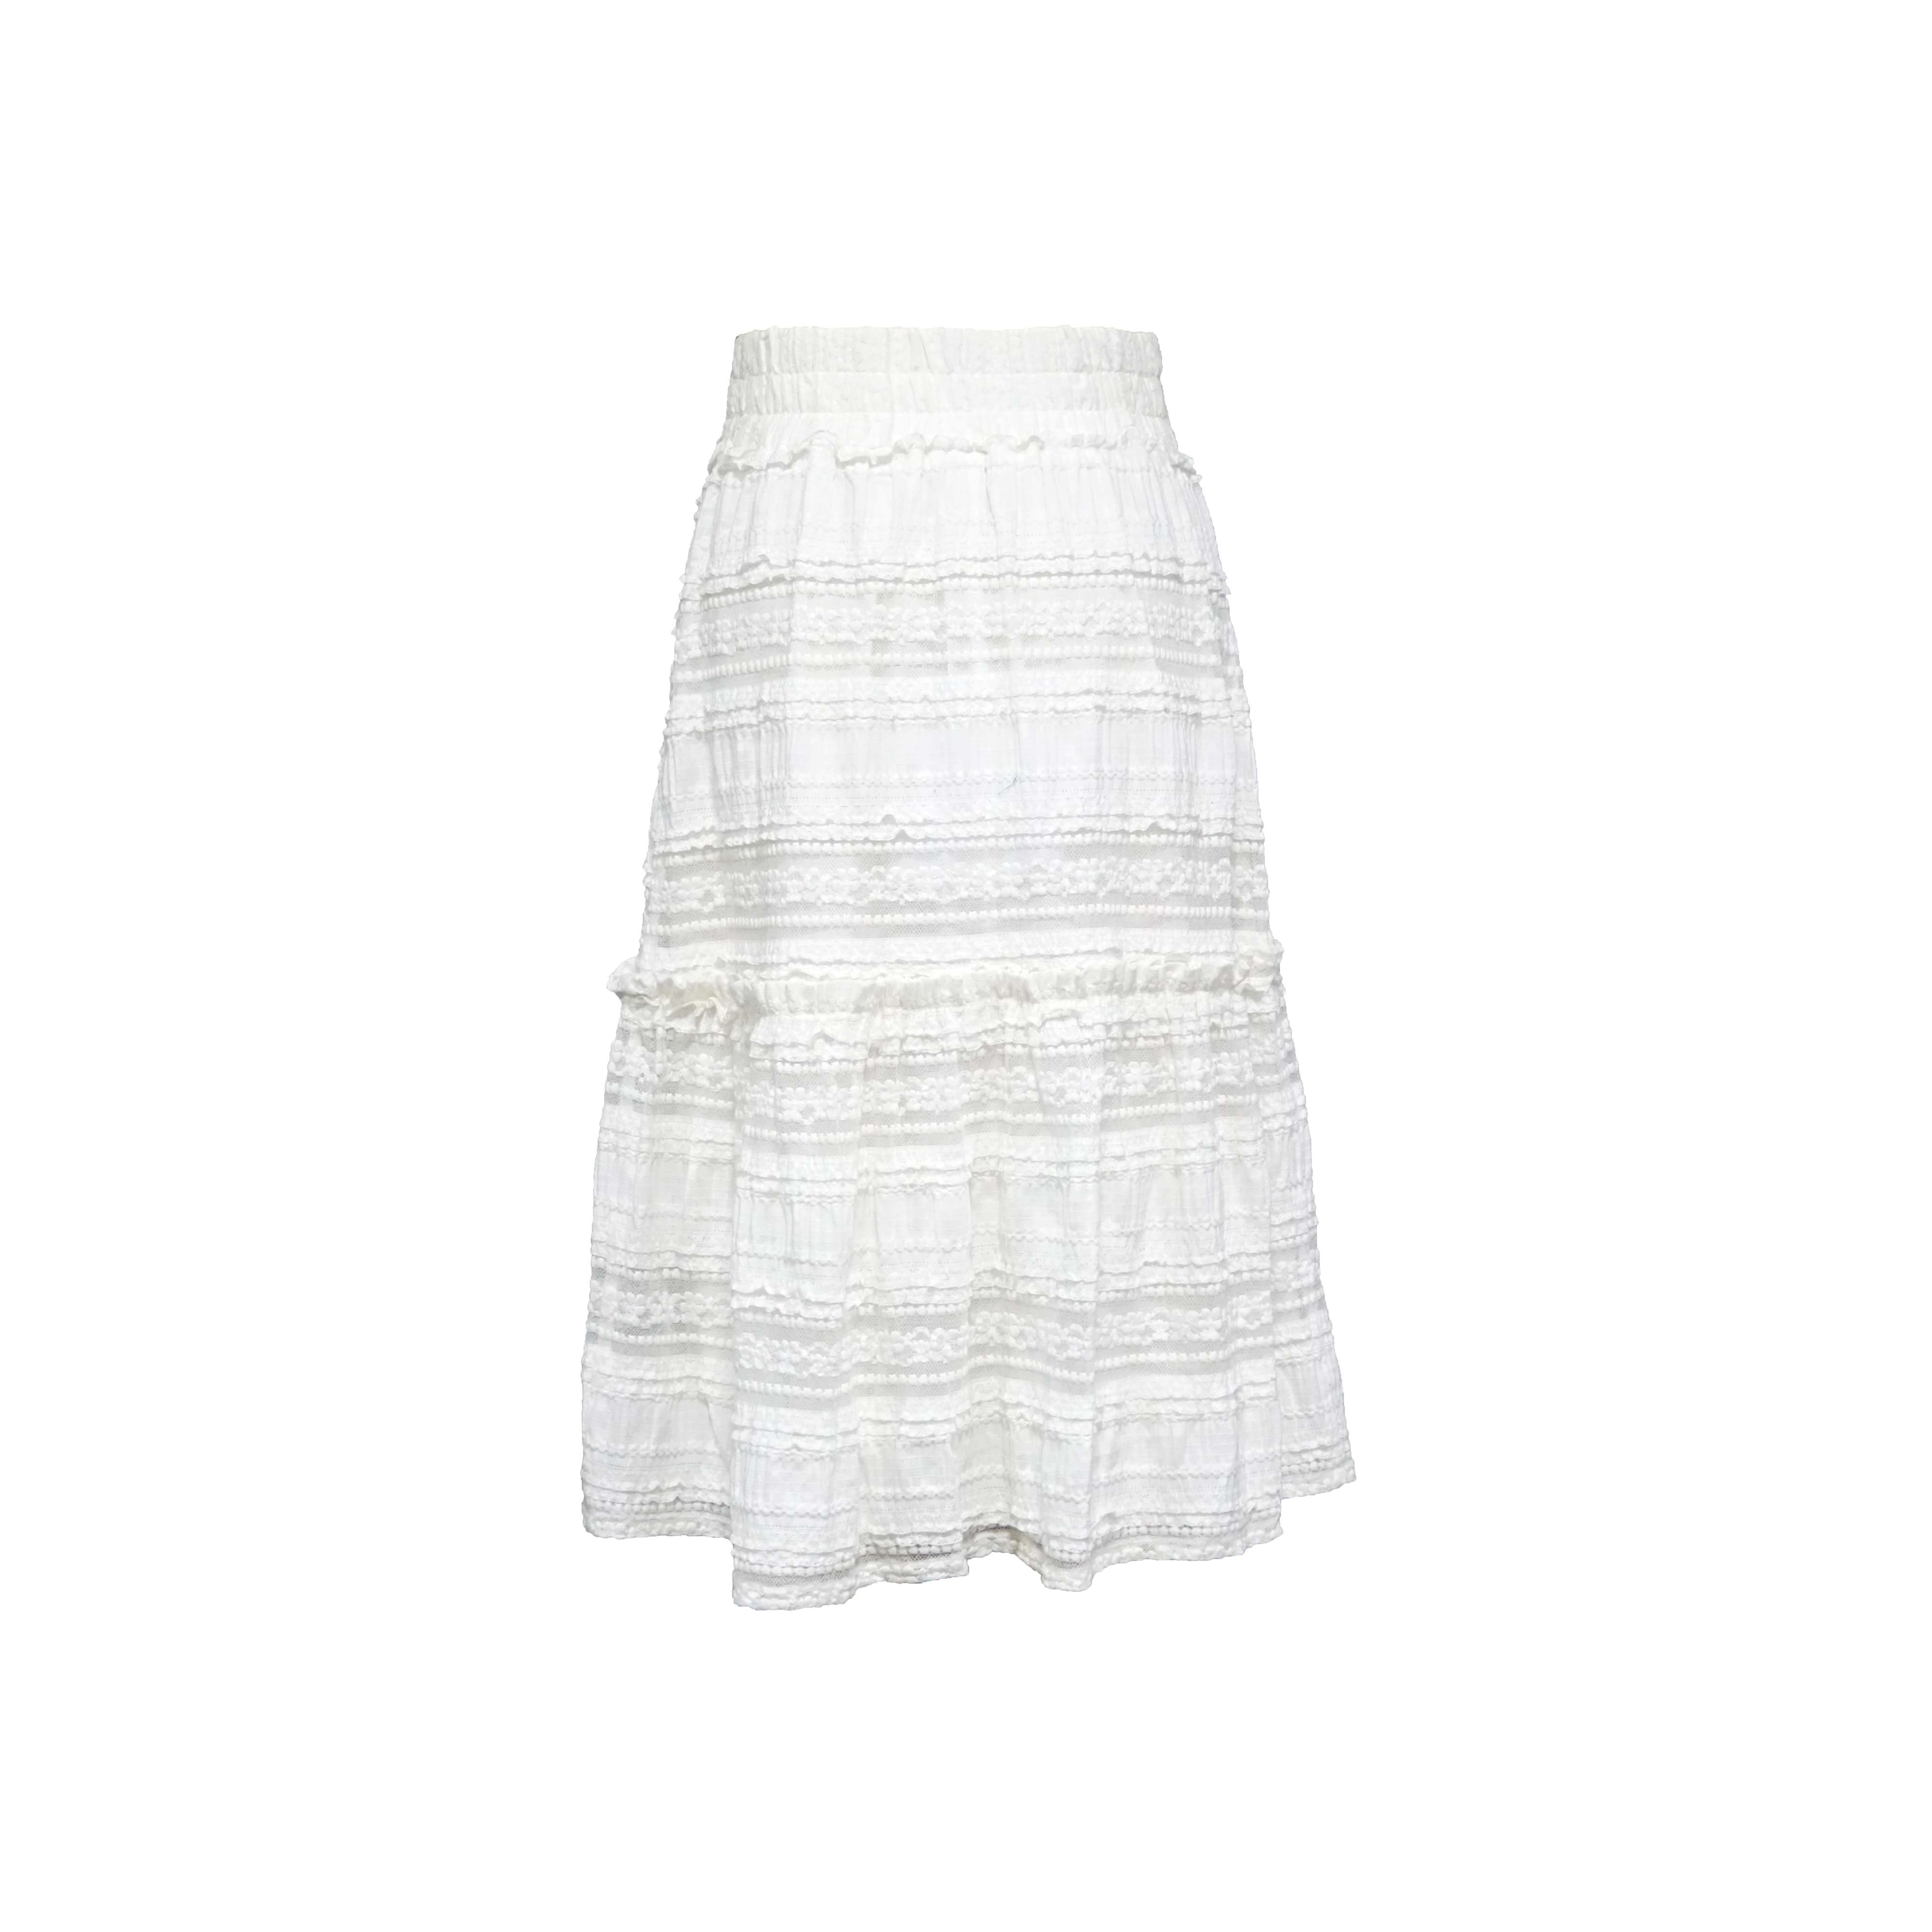 Bijela suknja A kroja